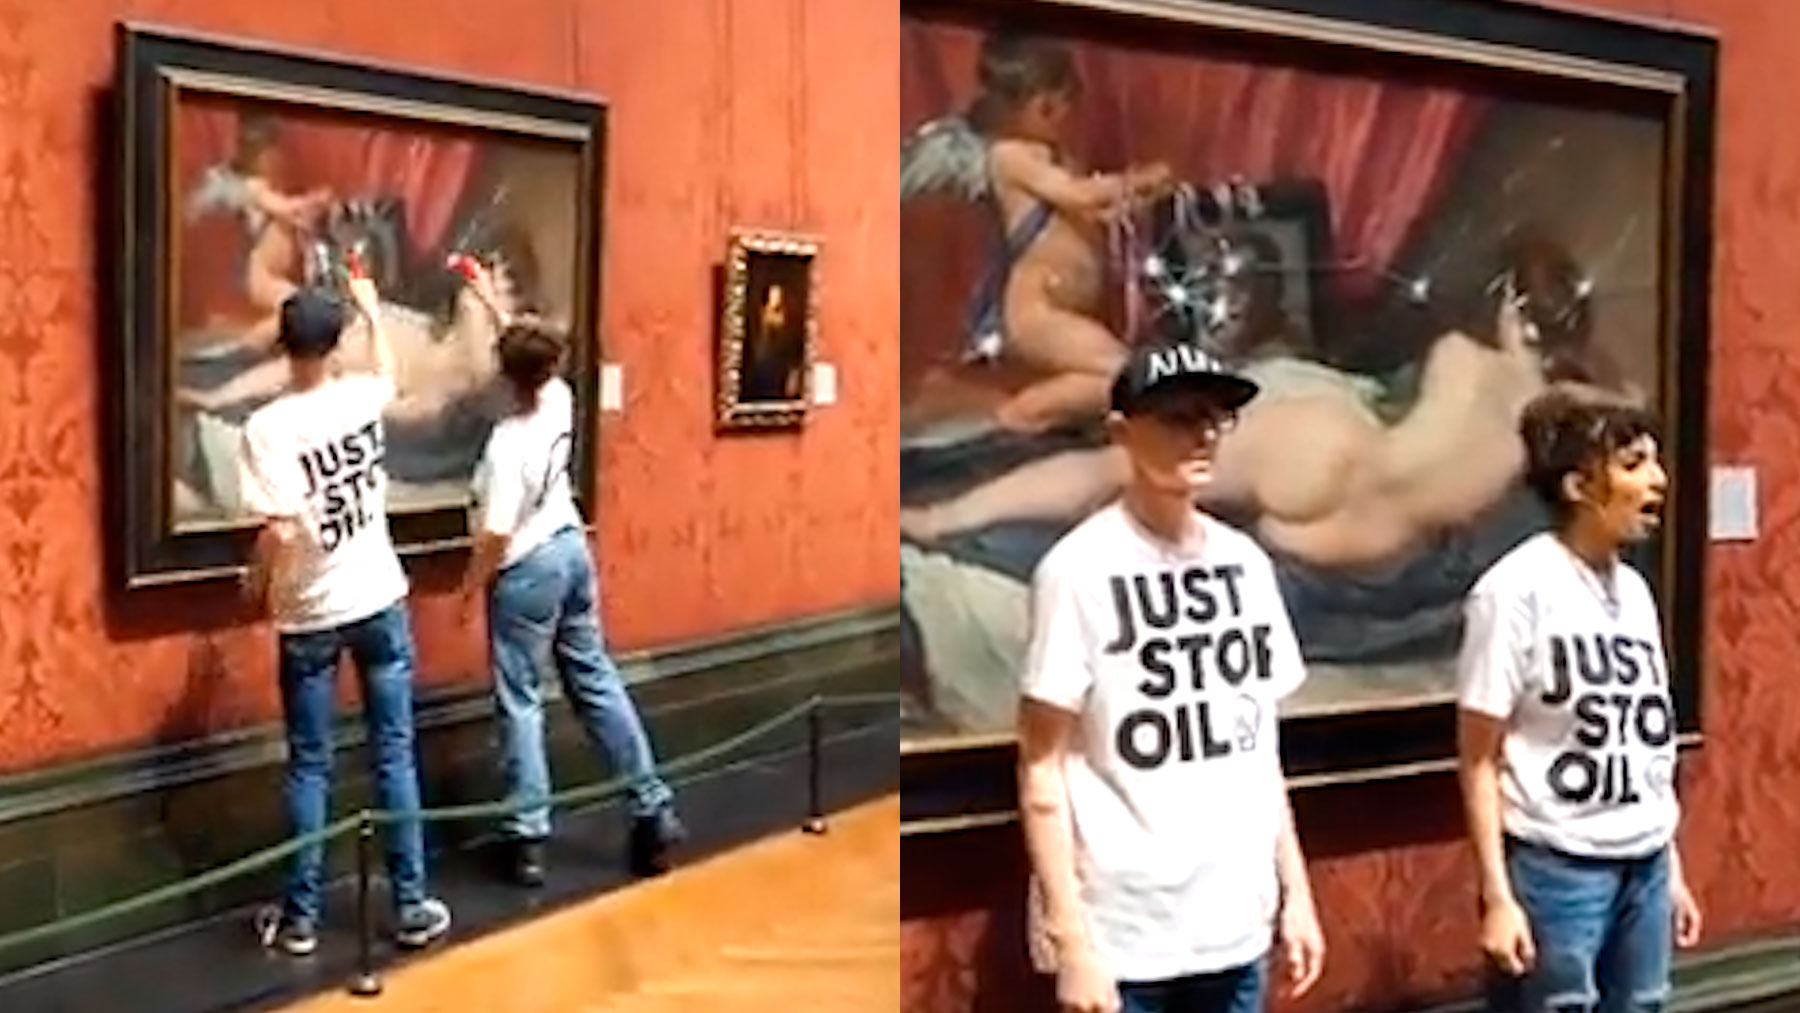 Activistas climáticos atacando el cuadro ‘La Venus del Espejo’ de Velázquez.